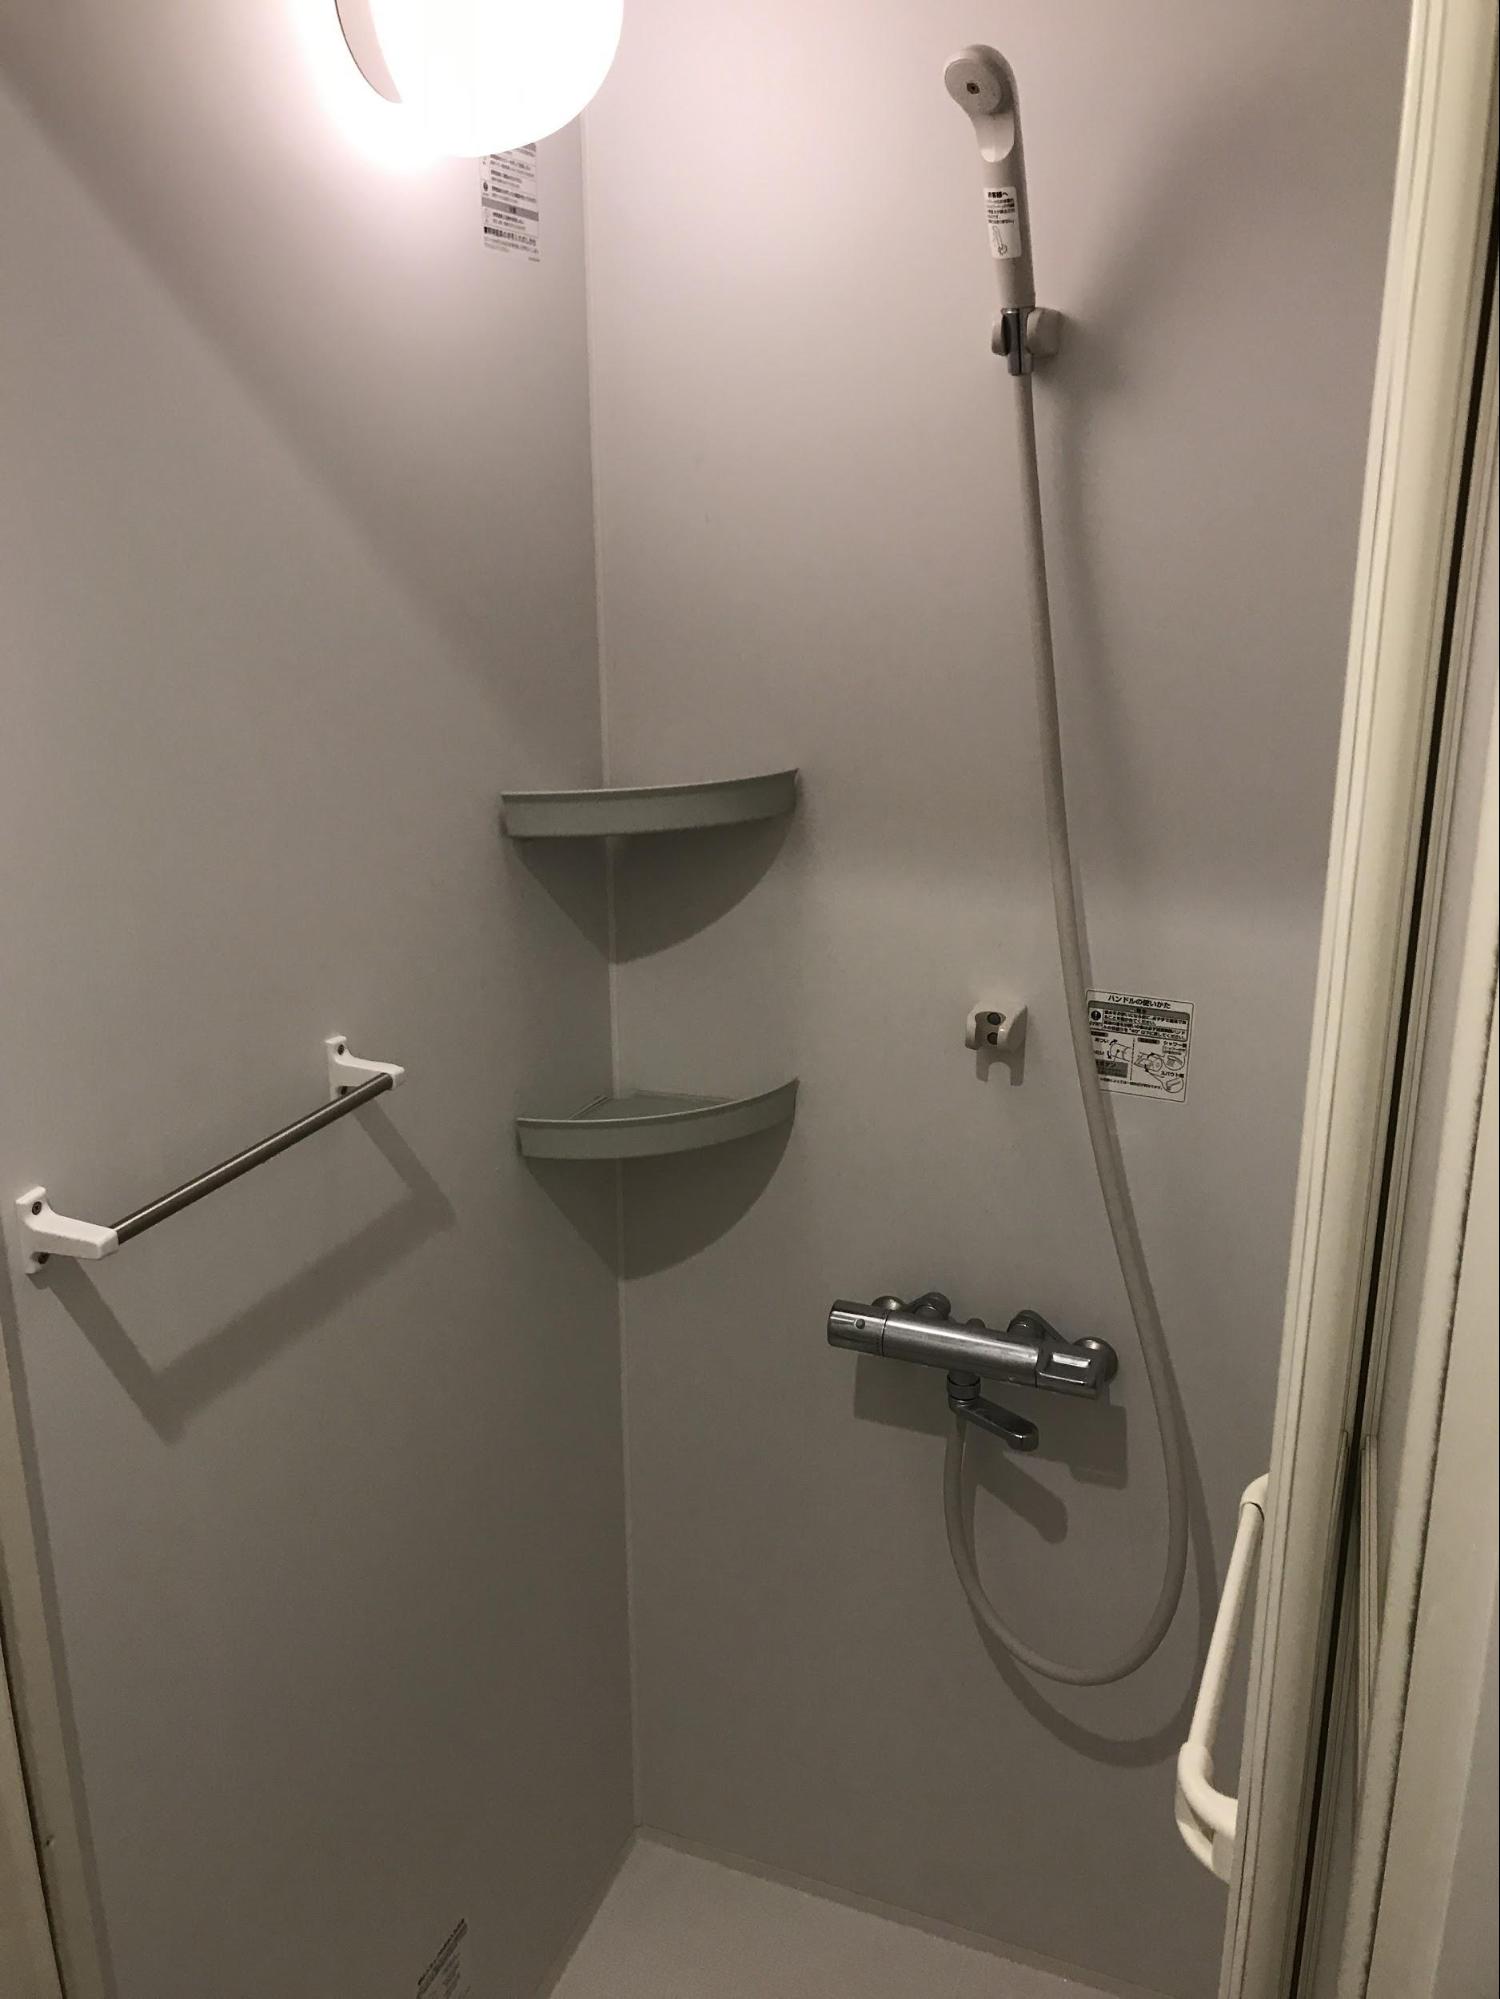 シャワー室イメージ画像